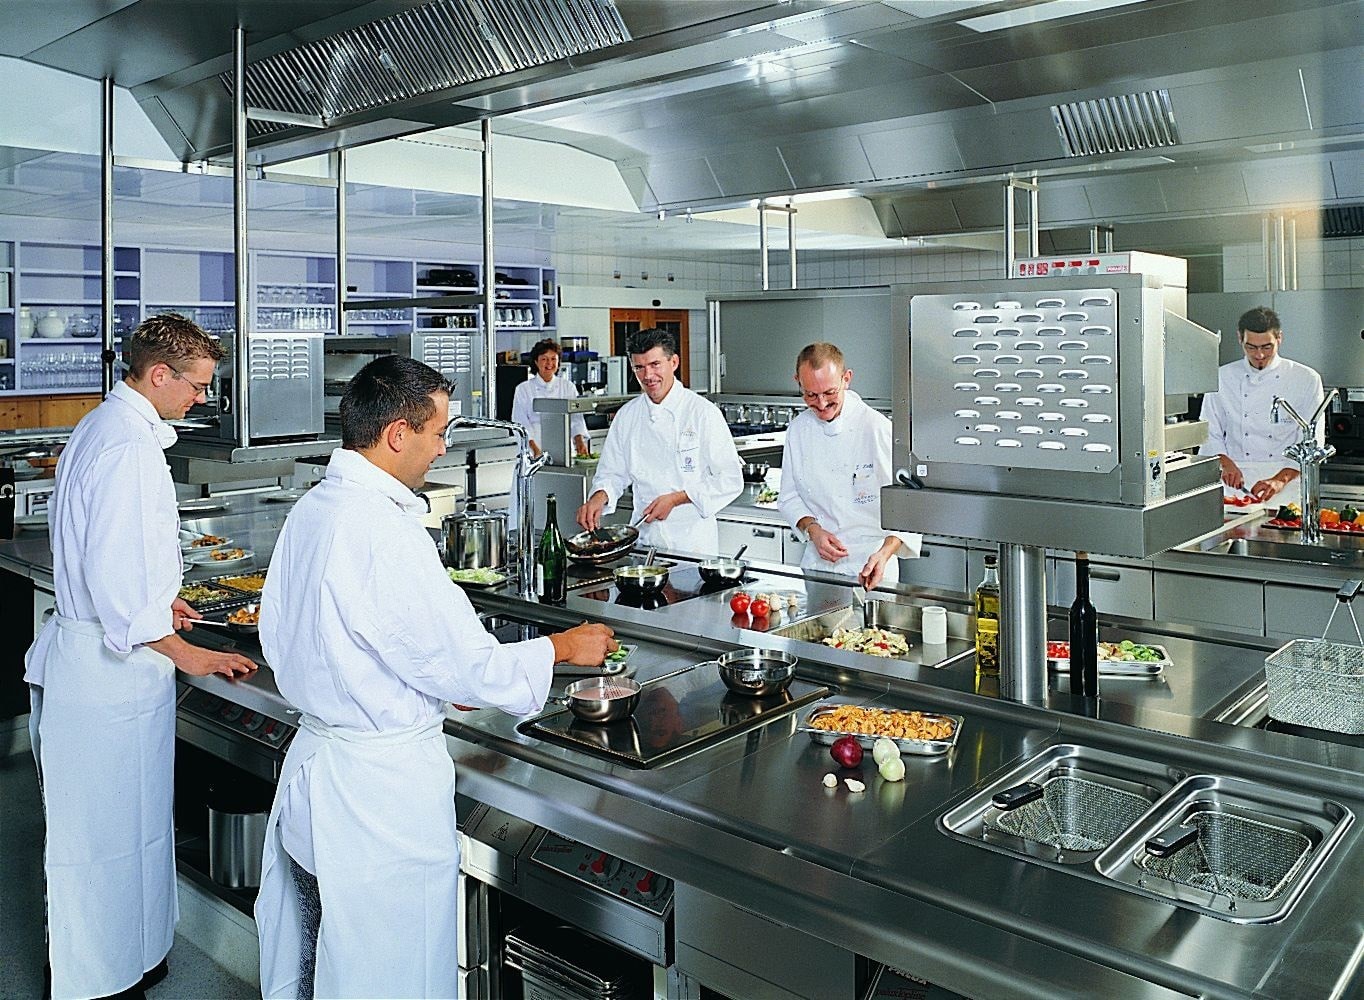 Thiết bị bếp công nghiệp chất lượng cao sẽ giúp giải quyết mọi vấn đề về nấu nướng trong nhà hàng của bạn. Với công nghệ tiên tiến và độ bền cao, chúng tôi cam kết cung cấp cho bạn những sản phẩm chất lượng nhất để giúp cho việc kinh doanh của bạn trở nên hiệu quả hơn. Hãy nhấn vào hình ảnh để mua ngay sản phẩm phù hợp với nhu cầu của bạn!